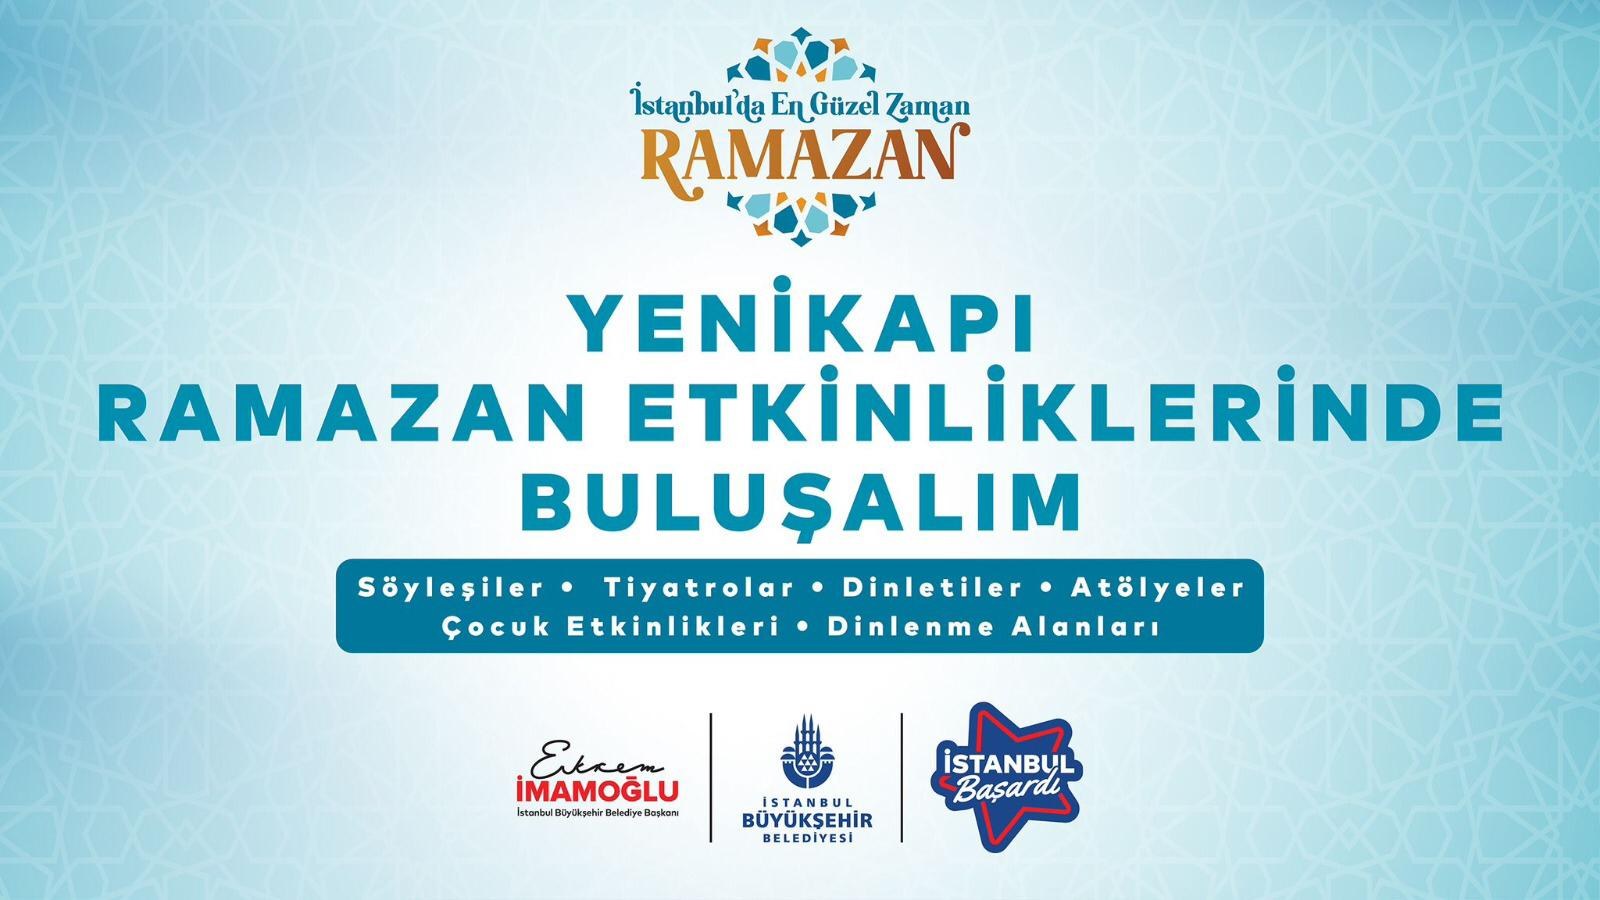 İBB İstanbul Büyükşehir Belediyesi'nin Düzenlediği İstanbul'da En Güzel Zaman Ramazan Teması ile Yenikapı Ramazan Etkinliklerinde Buluşalım